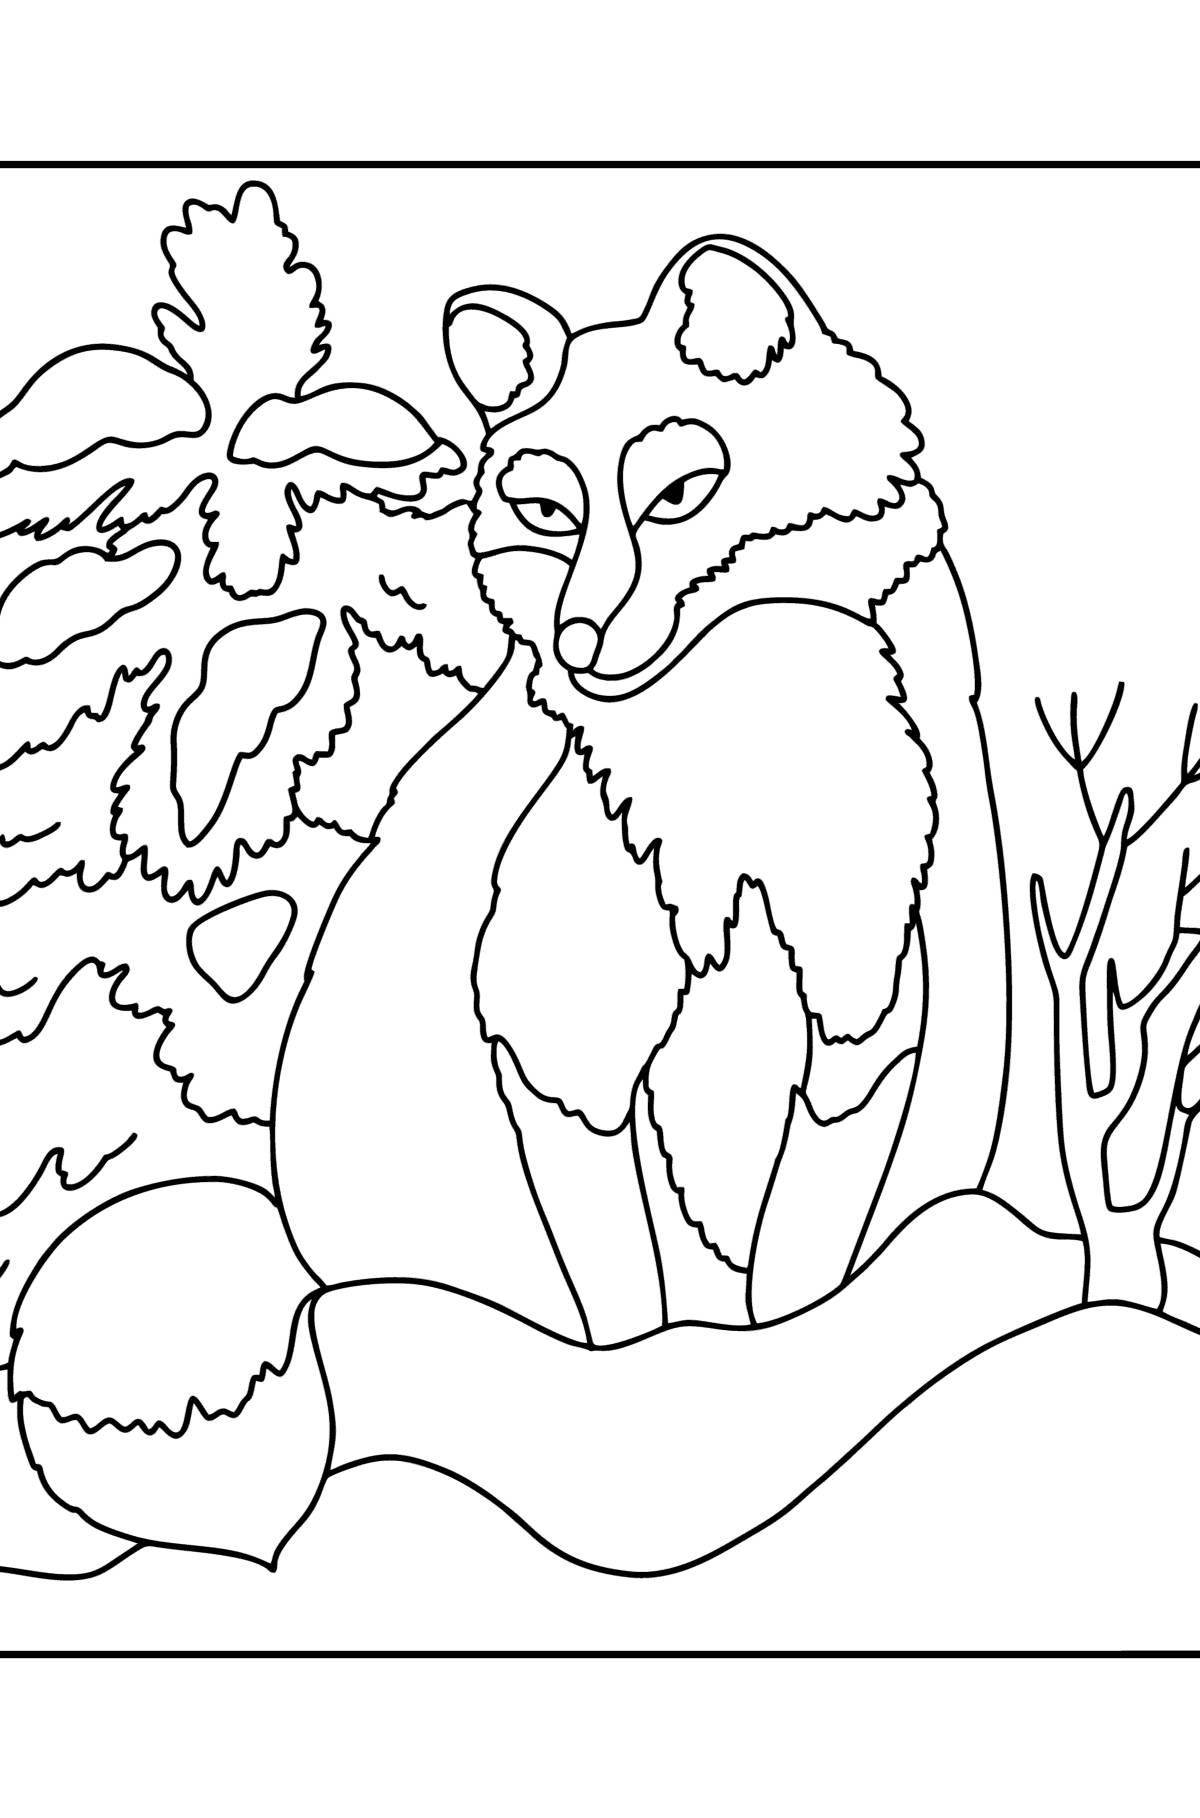 Cozy fox in winter coloring book